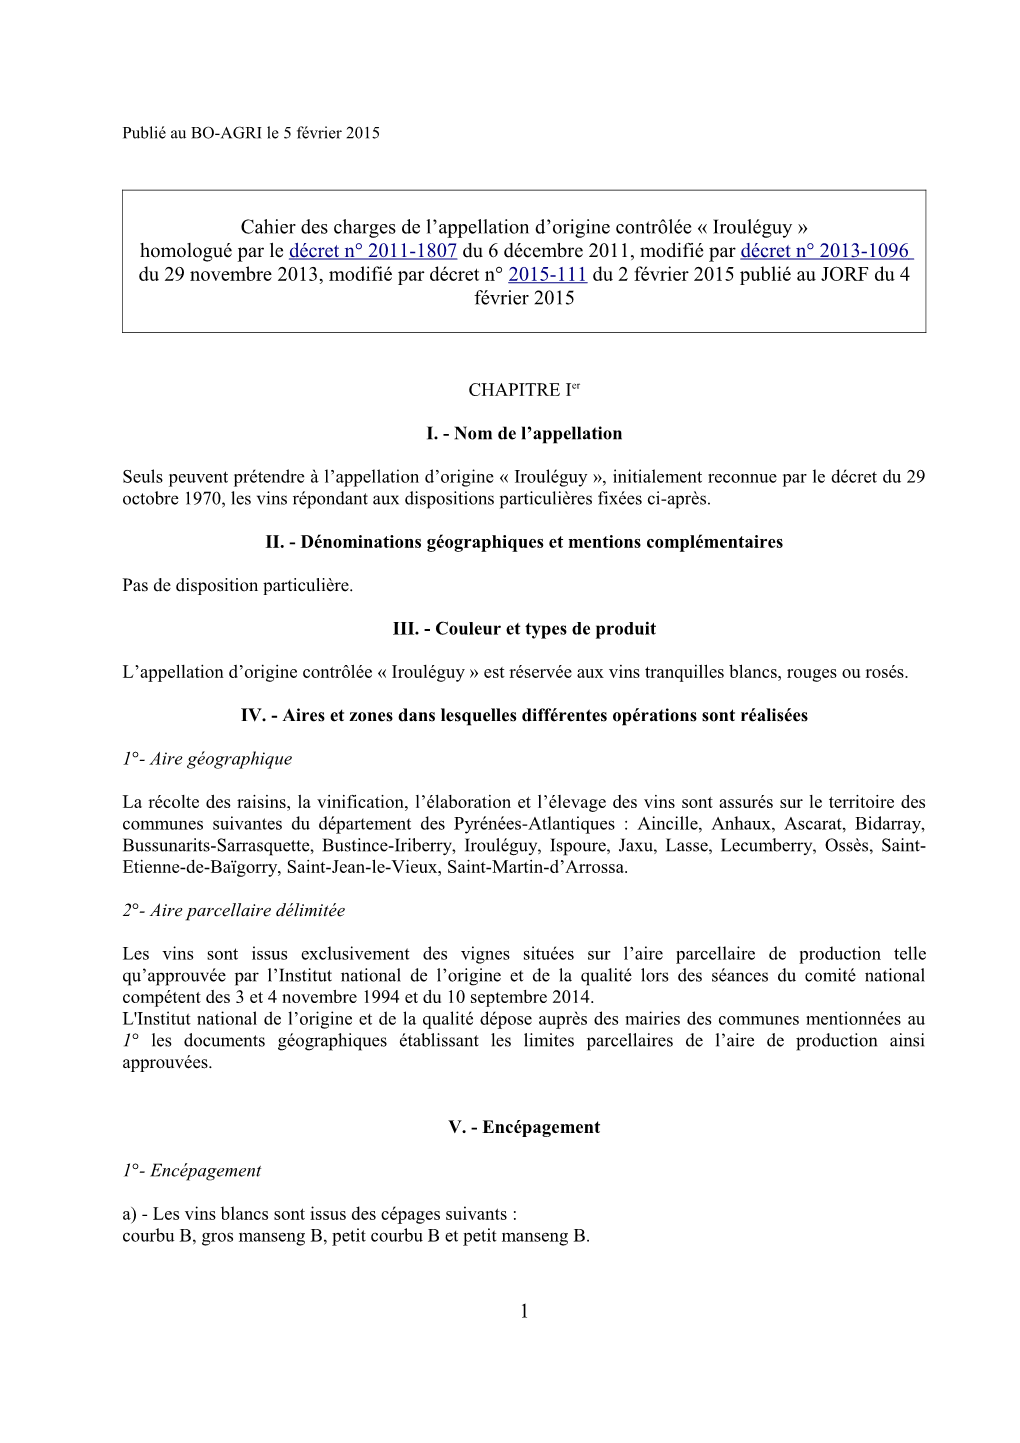 Cahier Des Charges De L'appellation D'origine Contrôlée Irouléguy